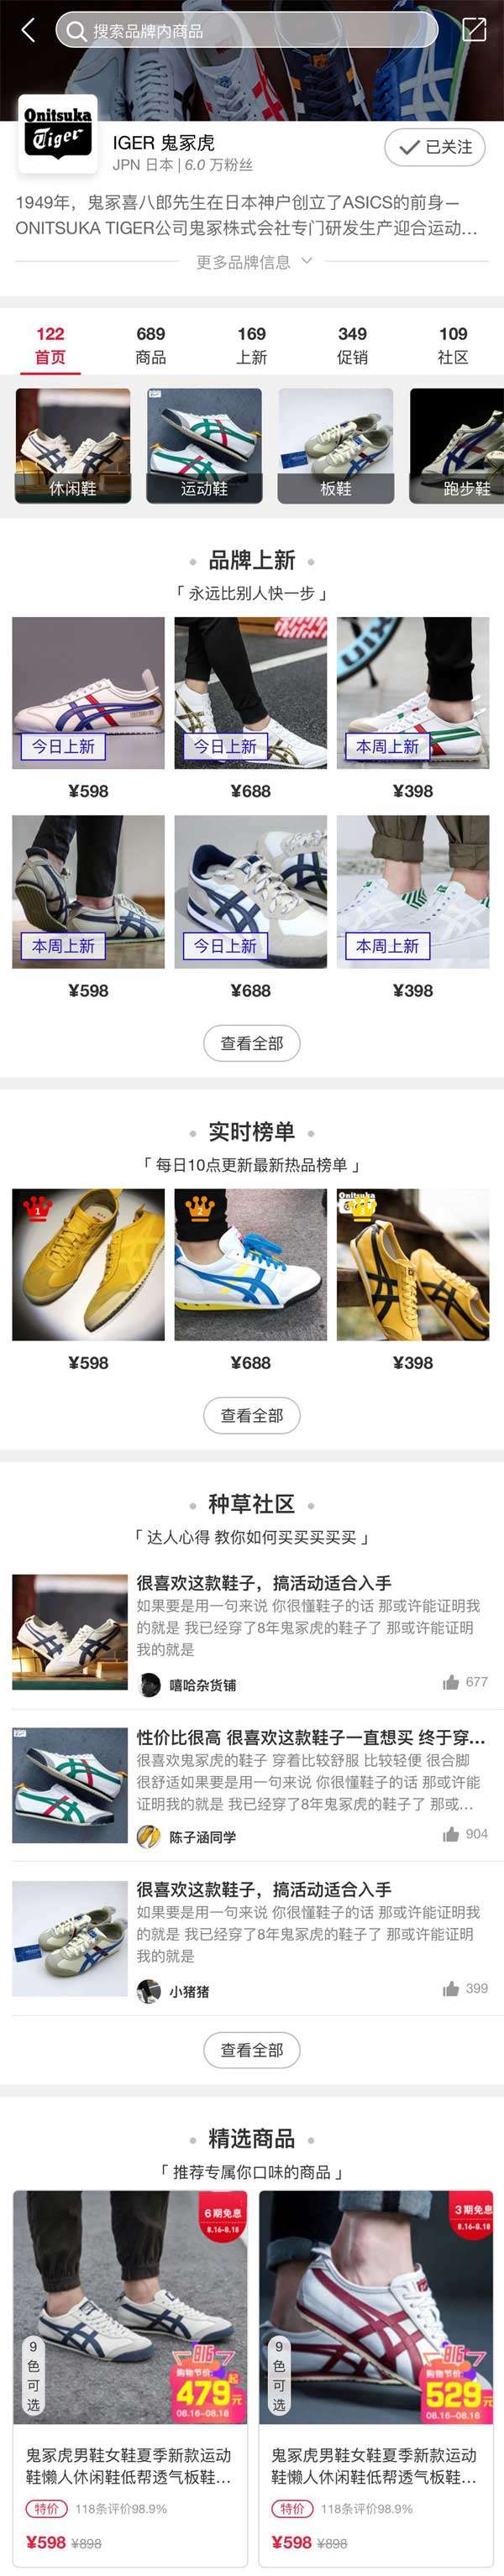 运动鞋手机商店页面模板插图